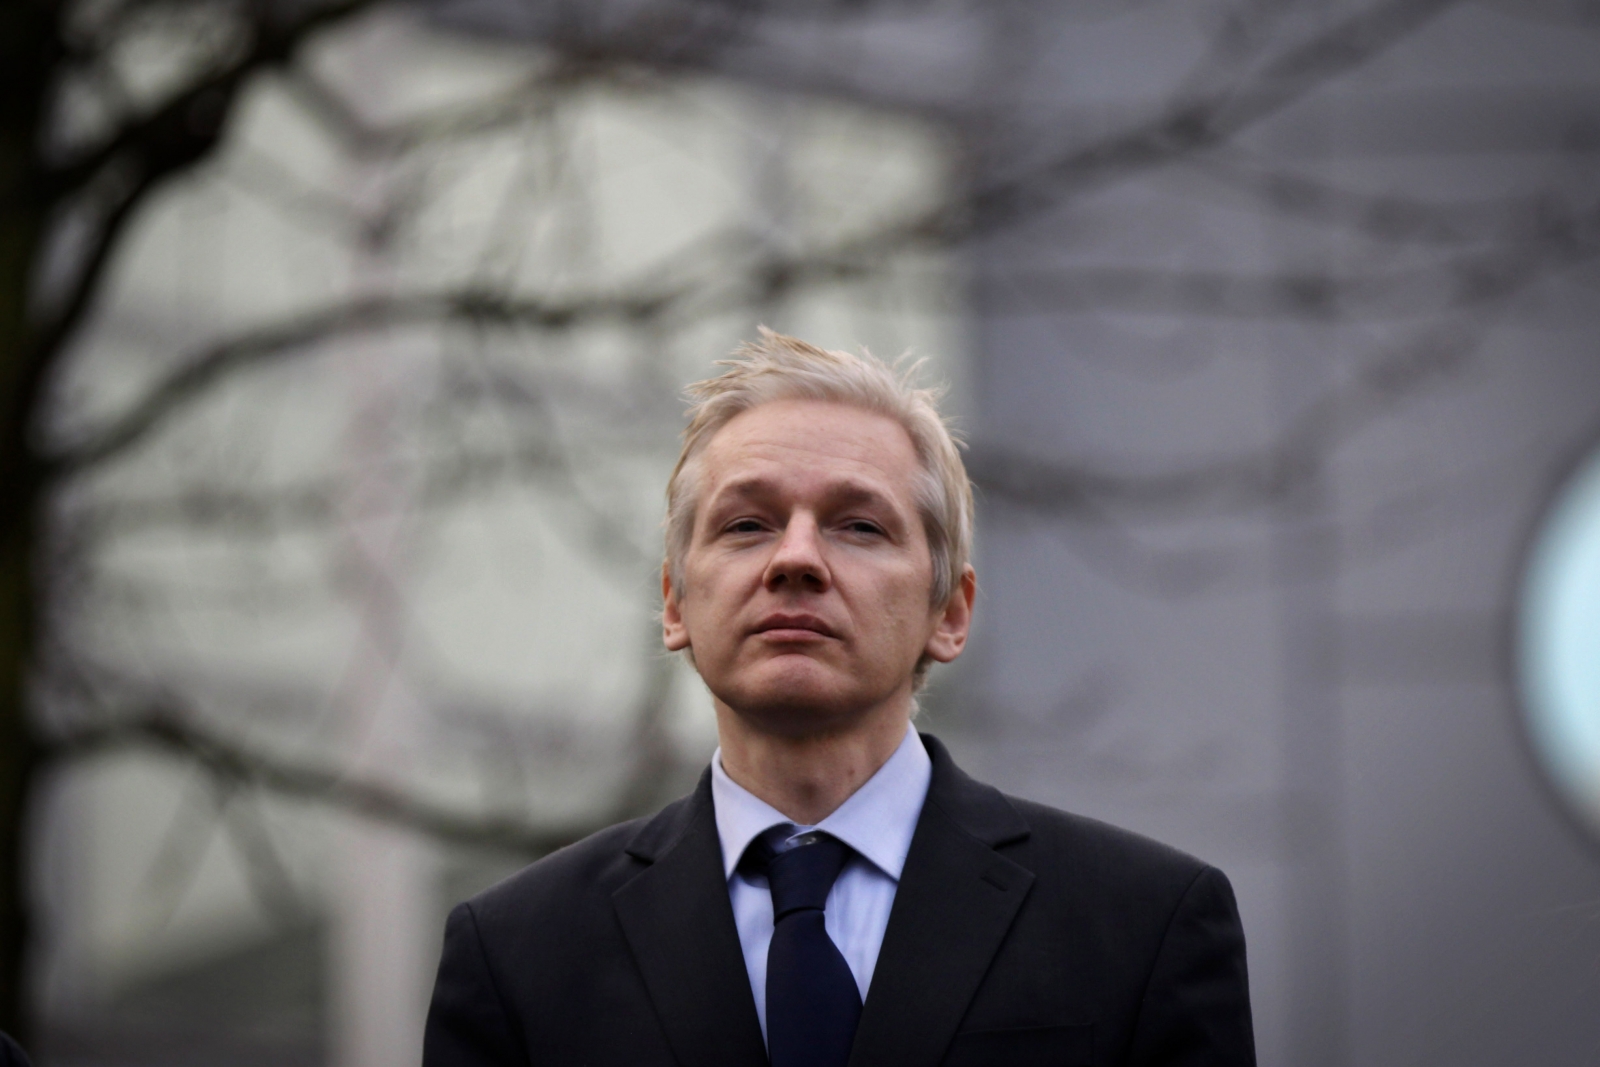 Julian Assange: WikiLeaks will show US intelligence ...